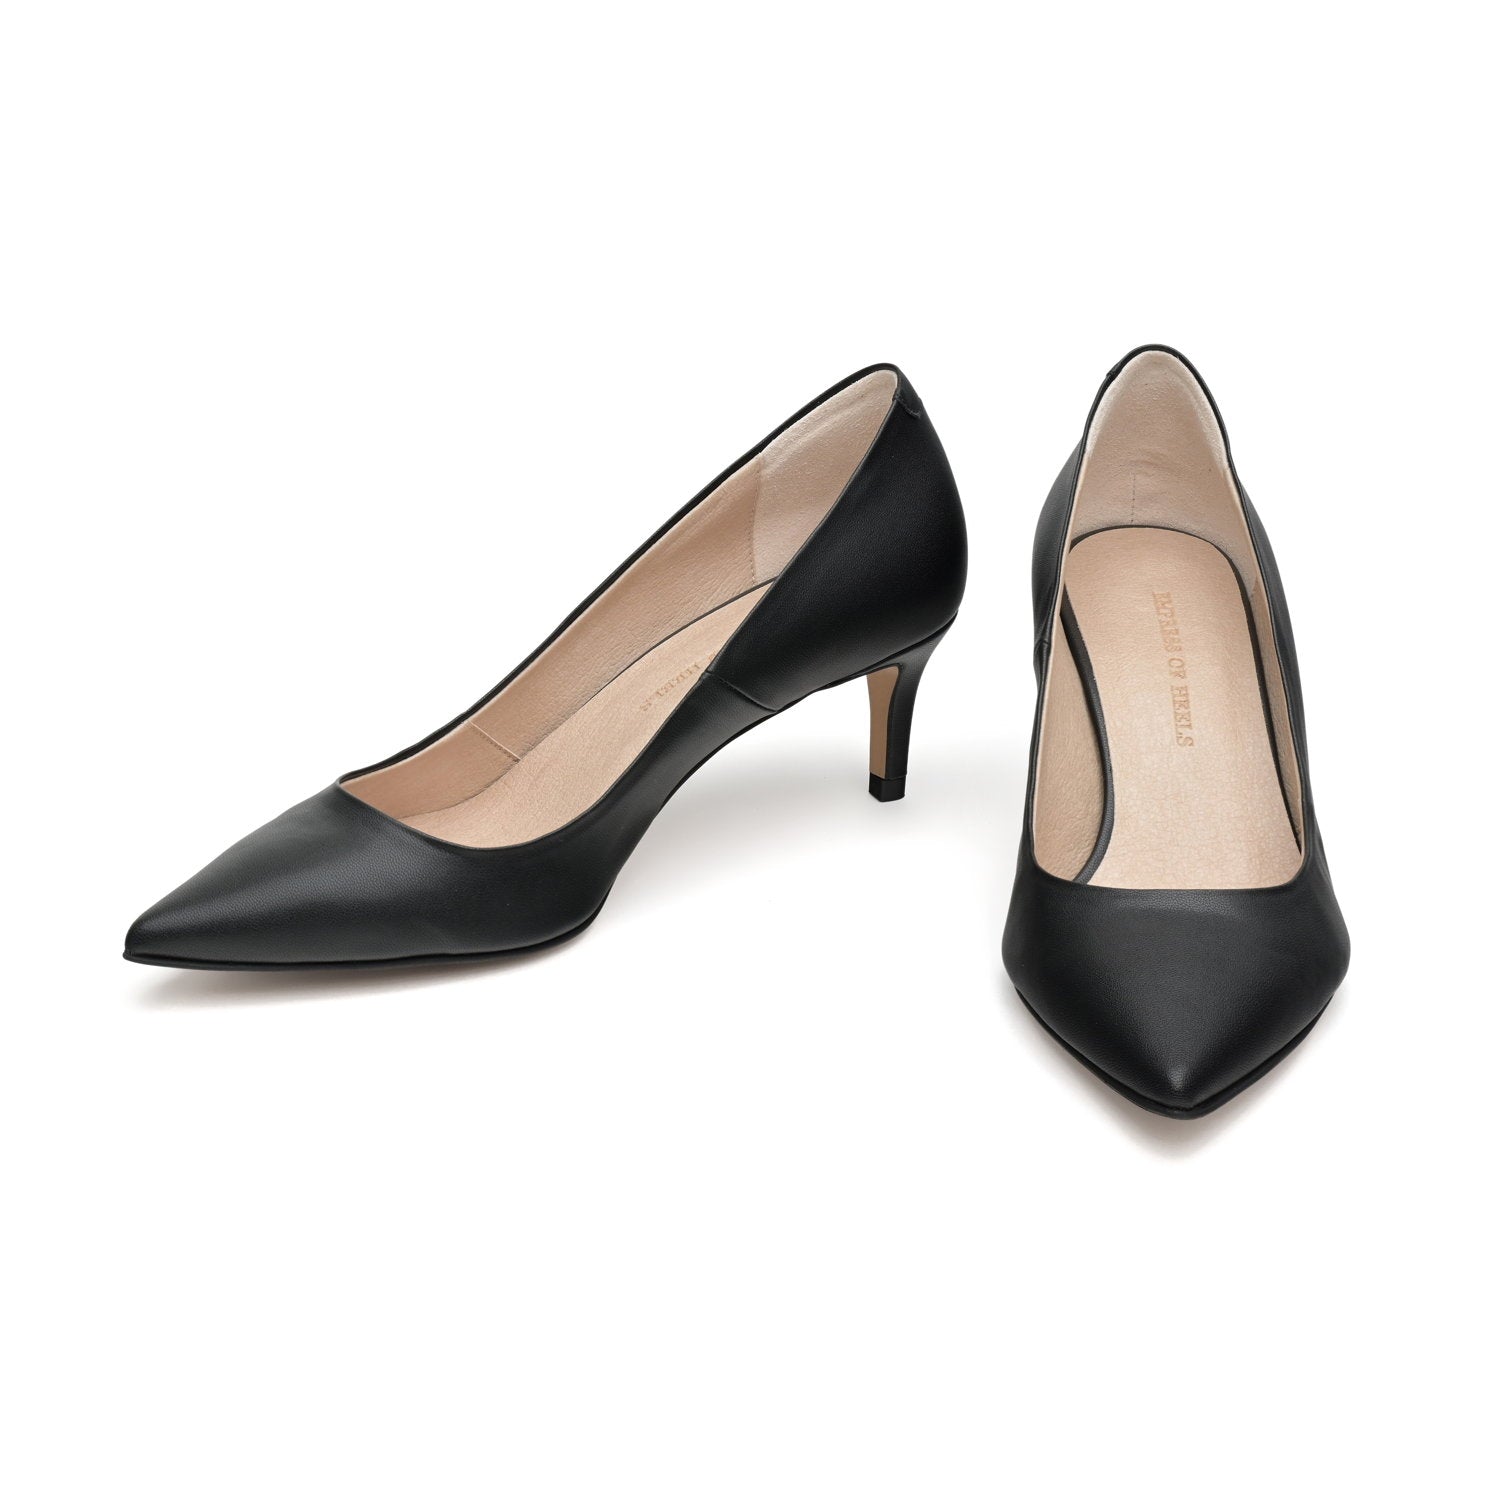 The Black - vegan 50mm heels